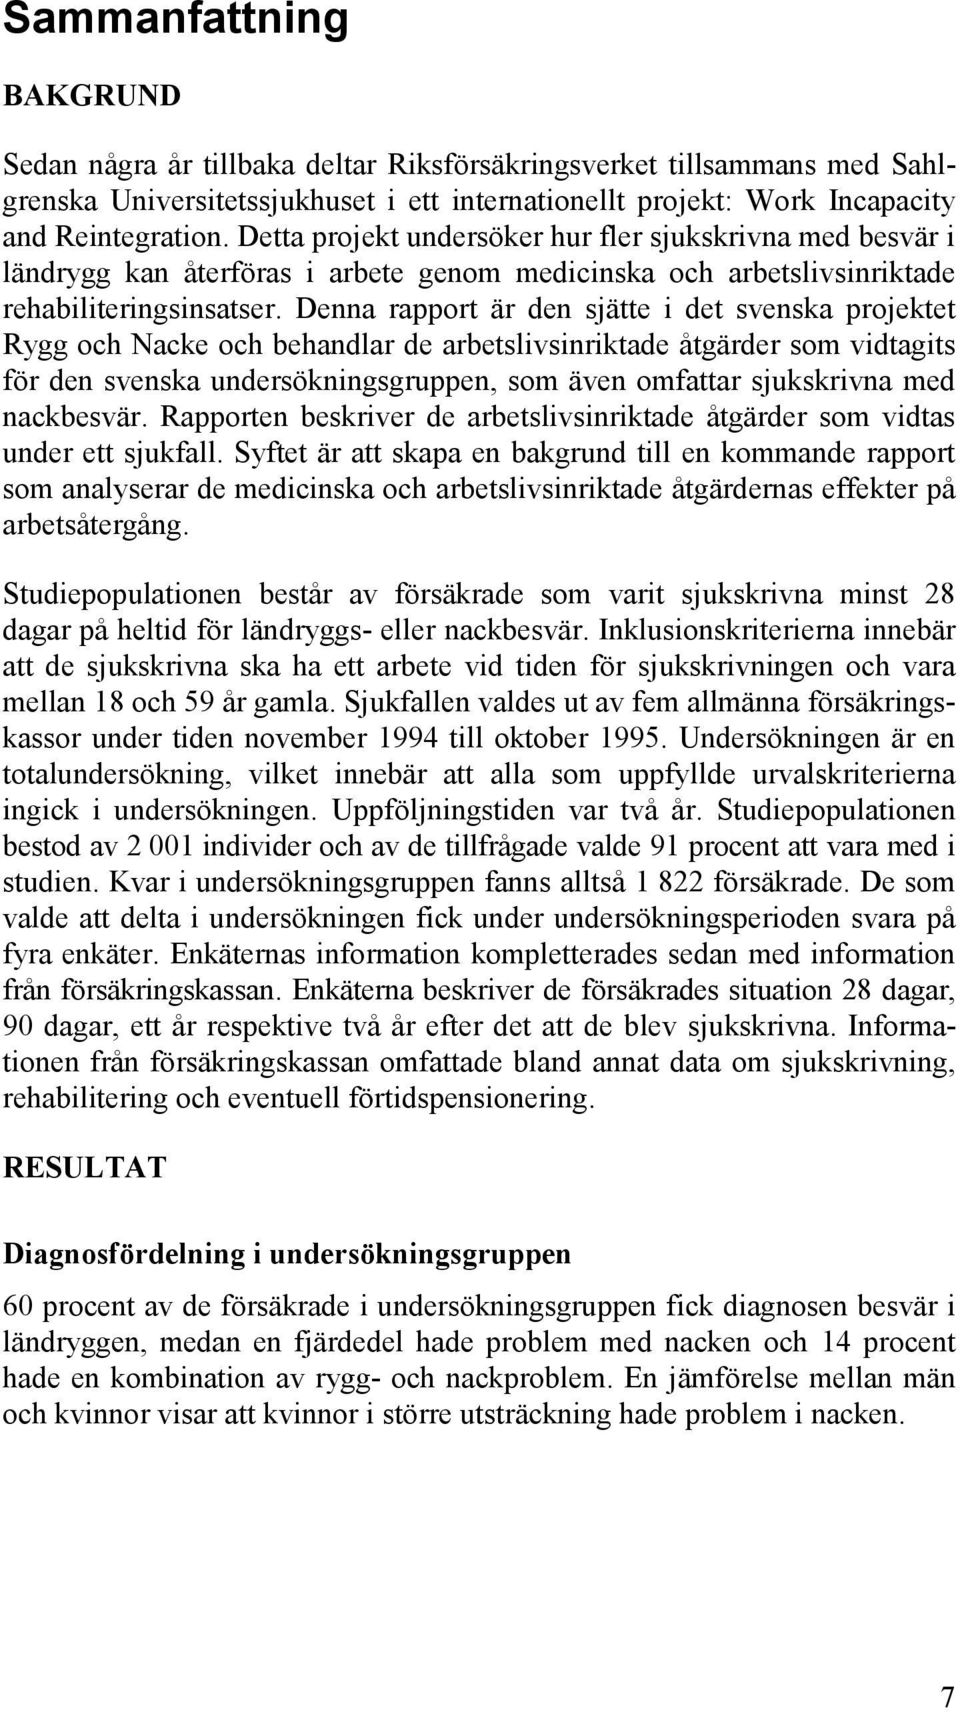 Denna rapport är den sjätte i det svenska projektet Rygg och Nacke och behandlar de arbetslivsinriktade åtgärder som vidtagits för den svenska undersökningsgruppen, som även omfattar sjukskrivna med